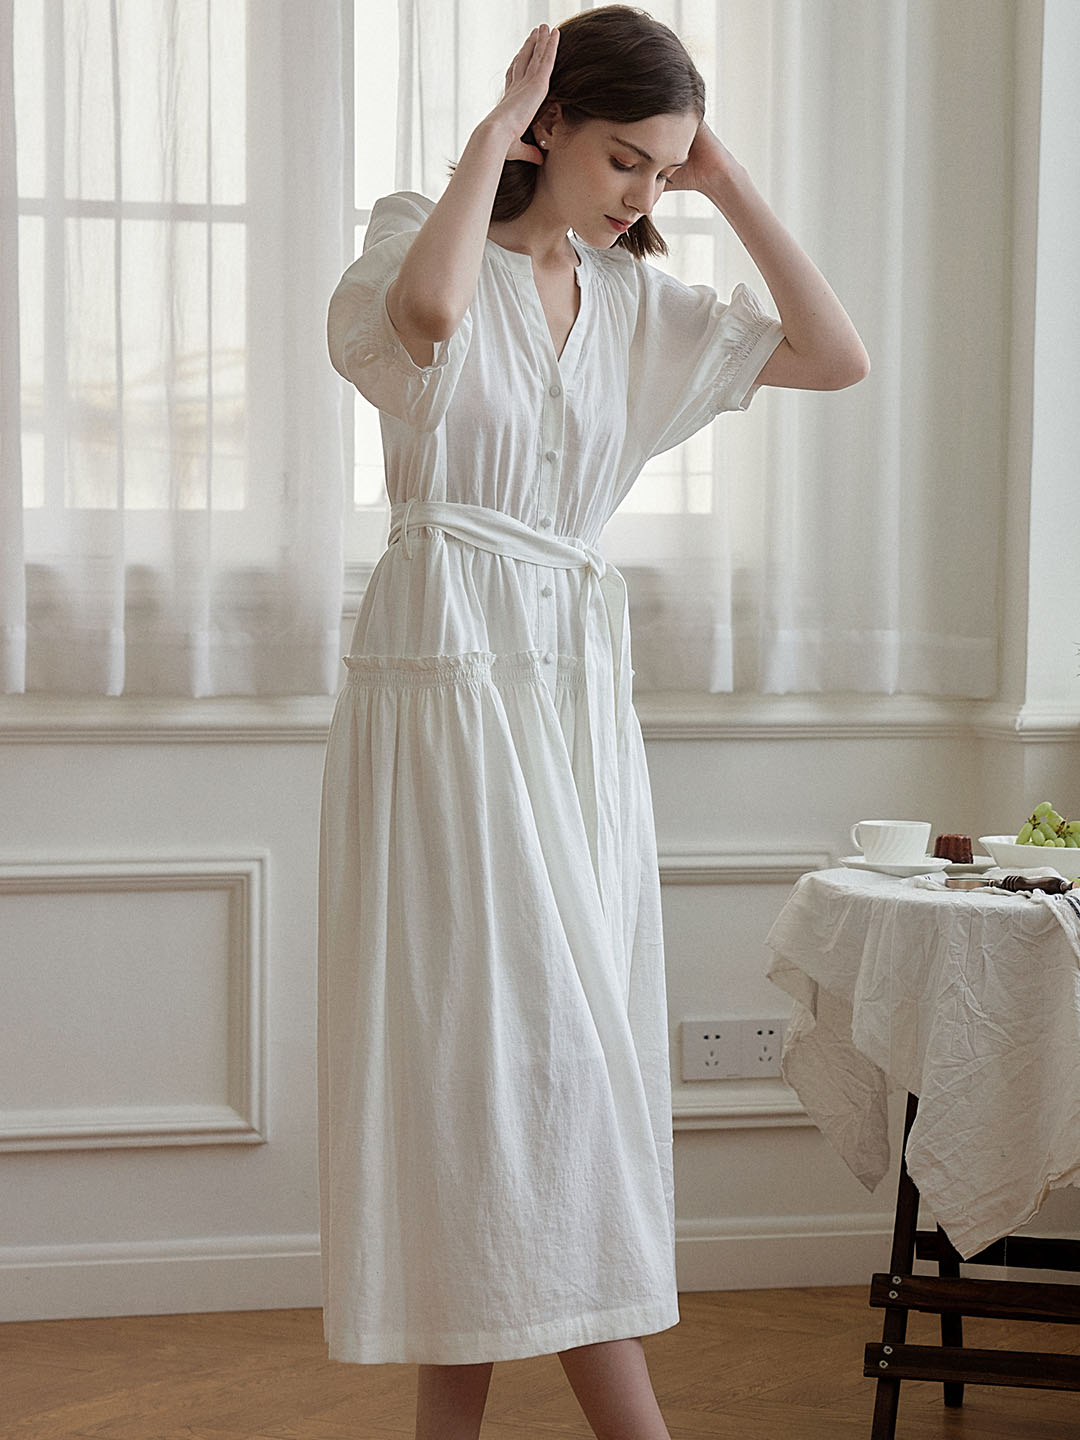 Aleah 法式 V 領白色連衣裙